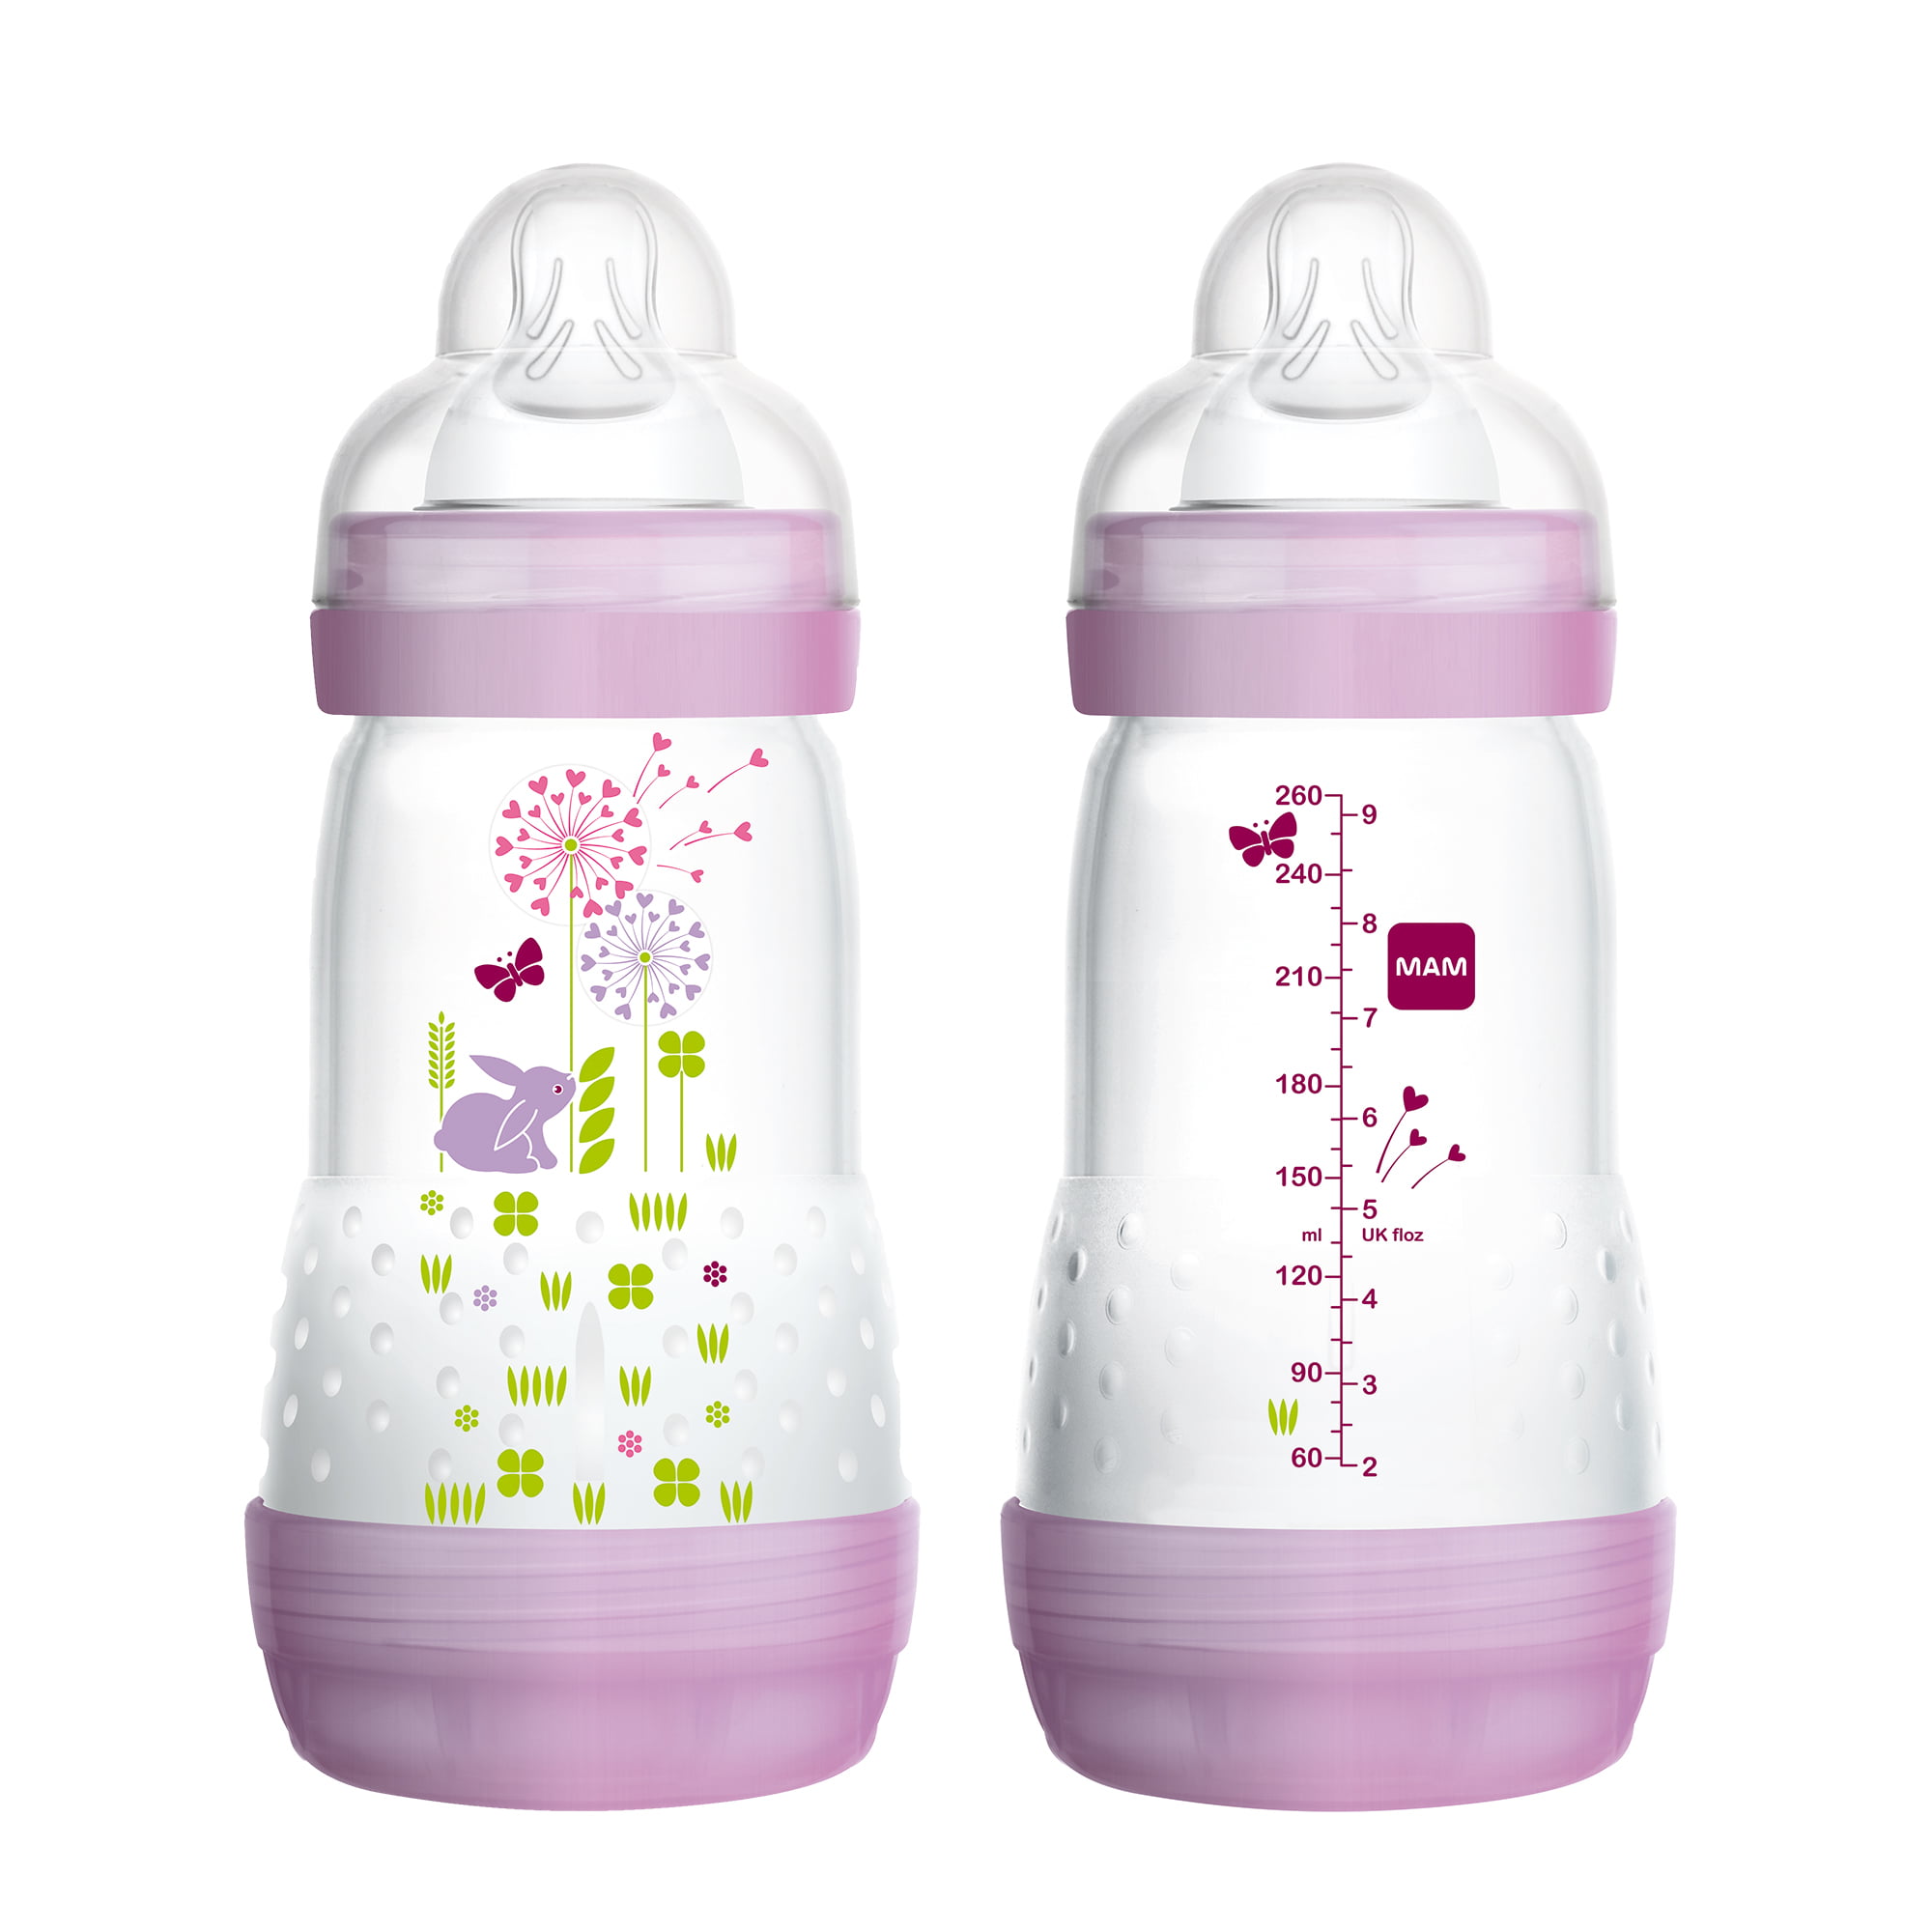 MAM Baby Bottles for Breastfed Babies 